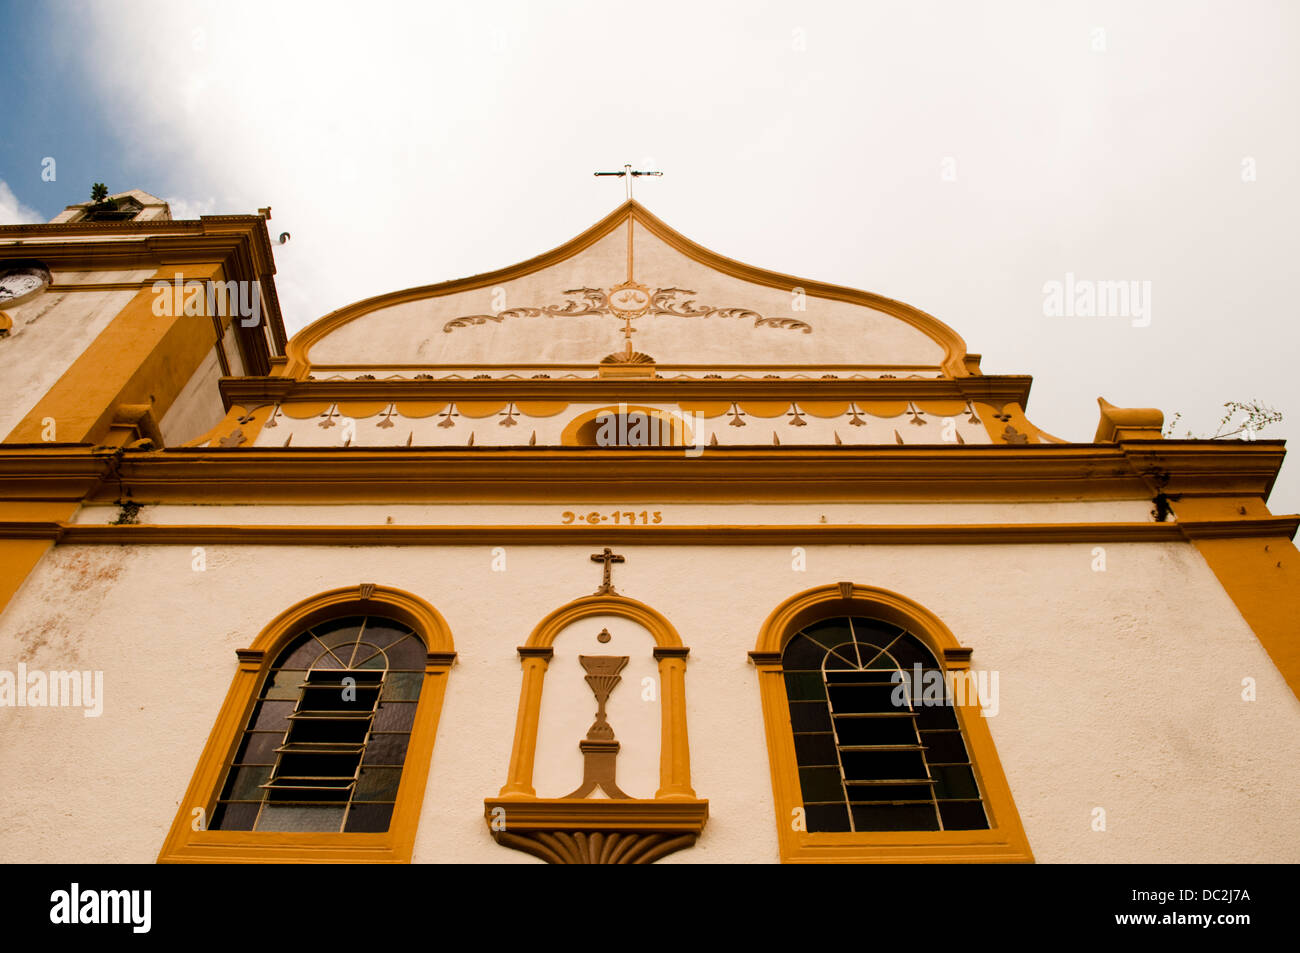 L'église catholique dans la ville de Antonina, l'État du Paraná, Brésil Banque D'Images